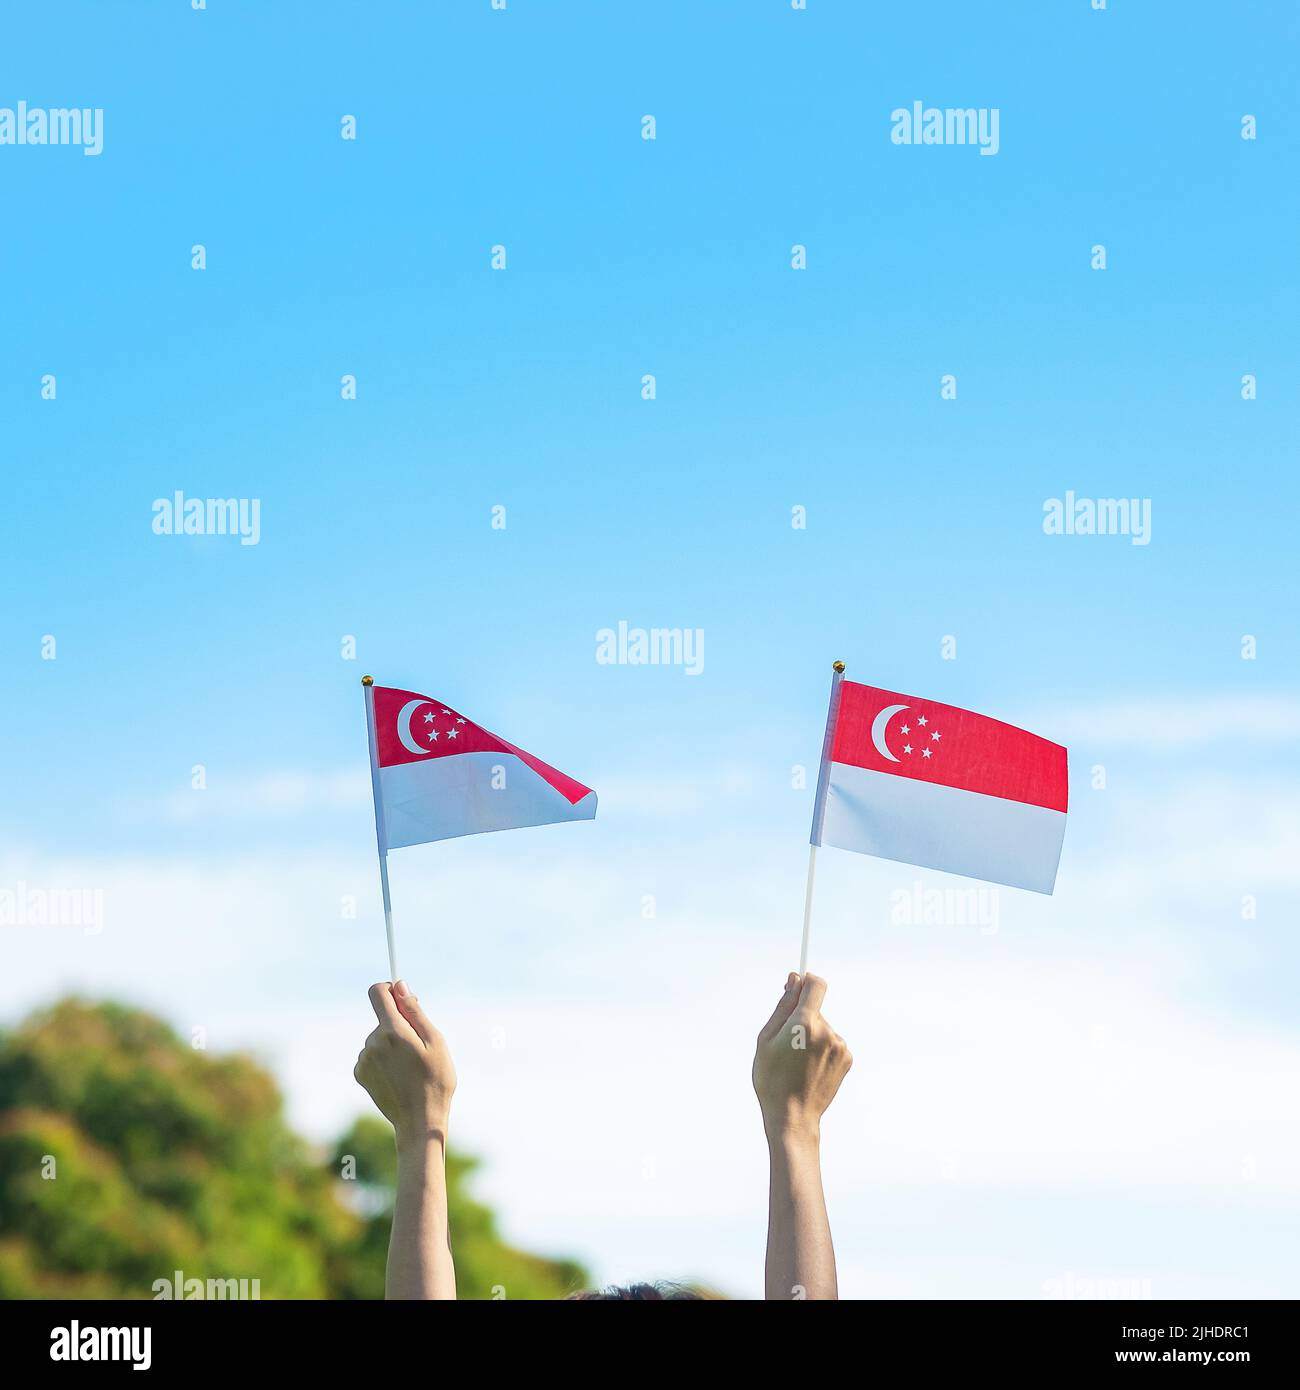 Mano che tiene la bandiera di Singapore su sfondo blu cielo. Singapore National Day e buone celebrazioni Foto Stock